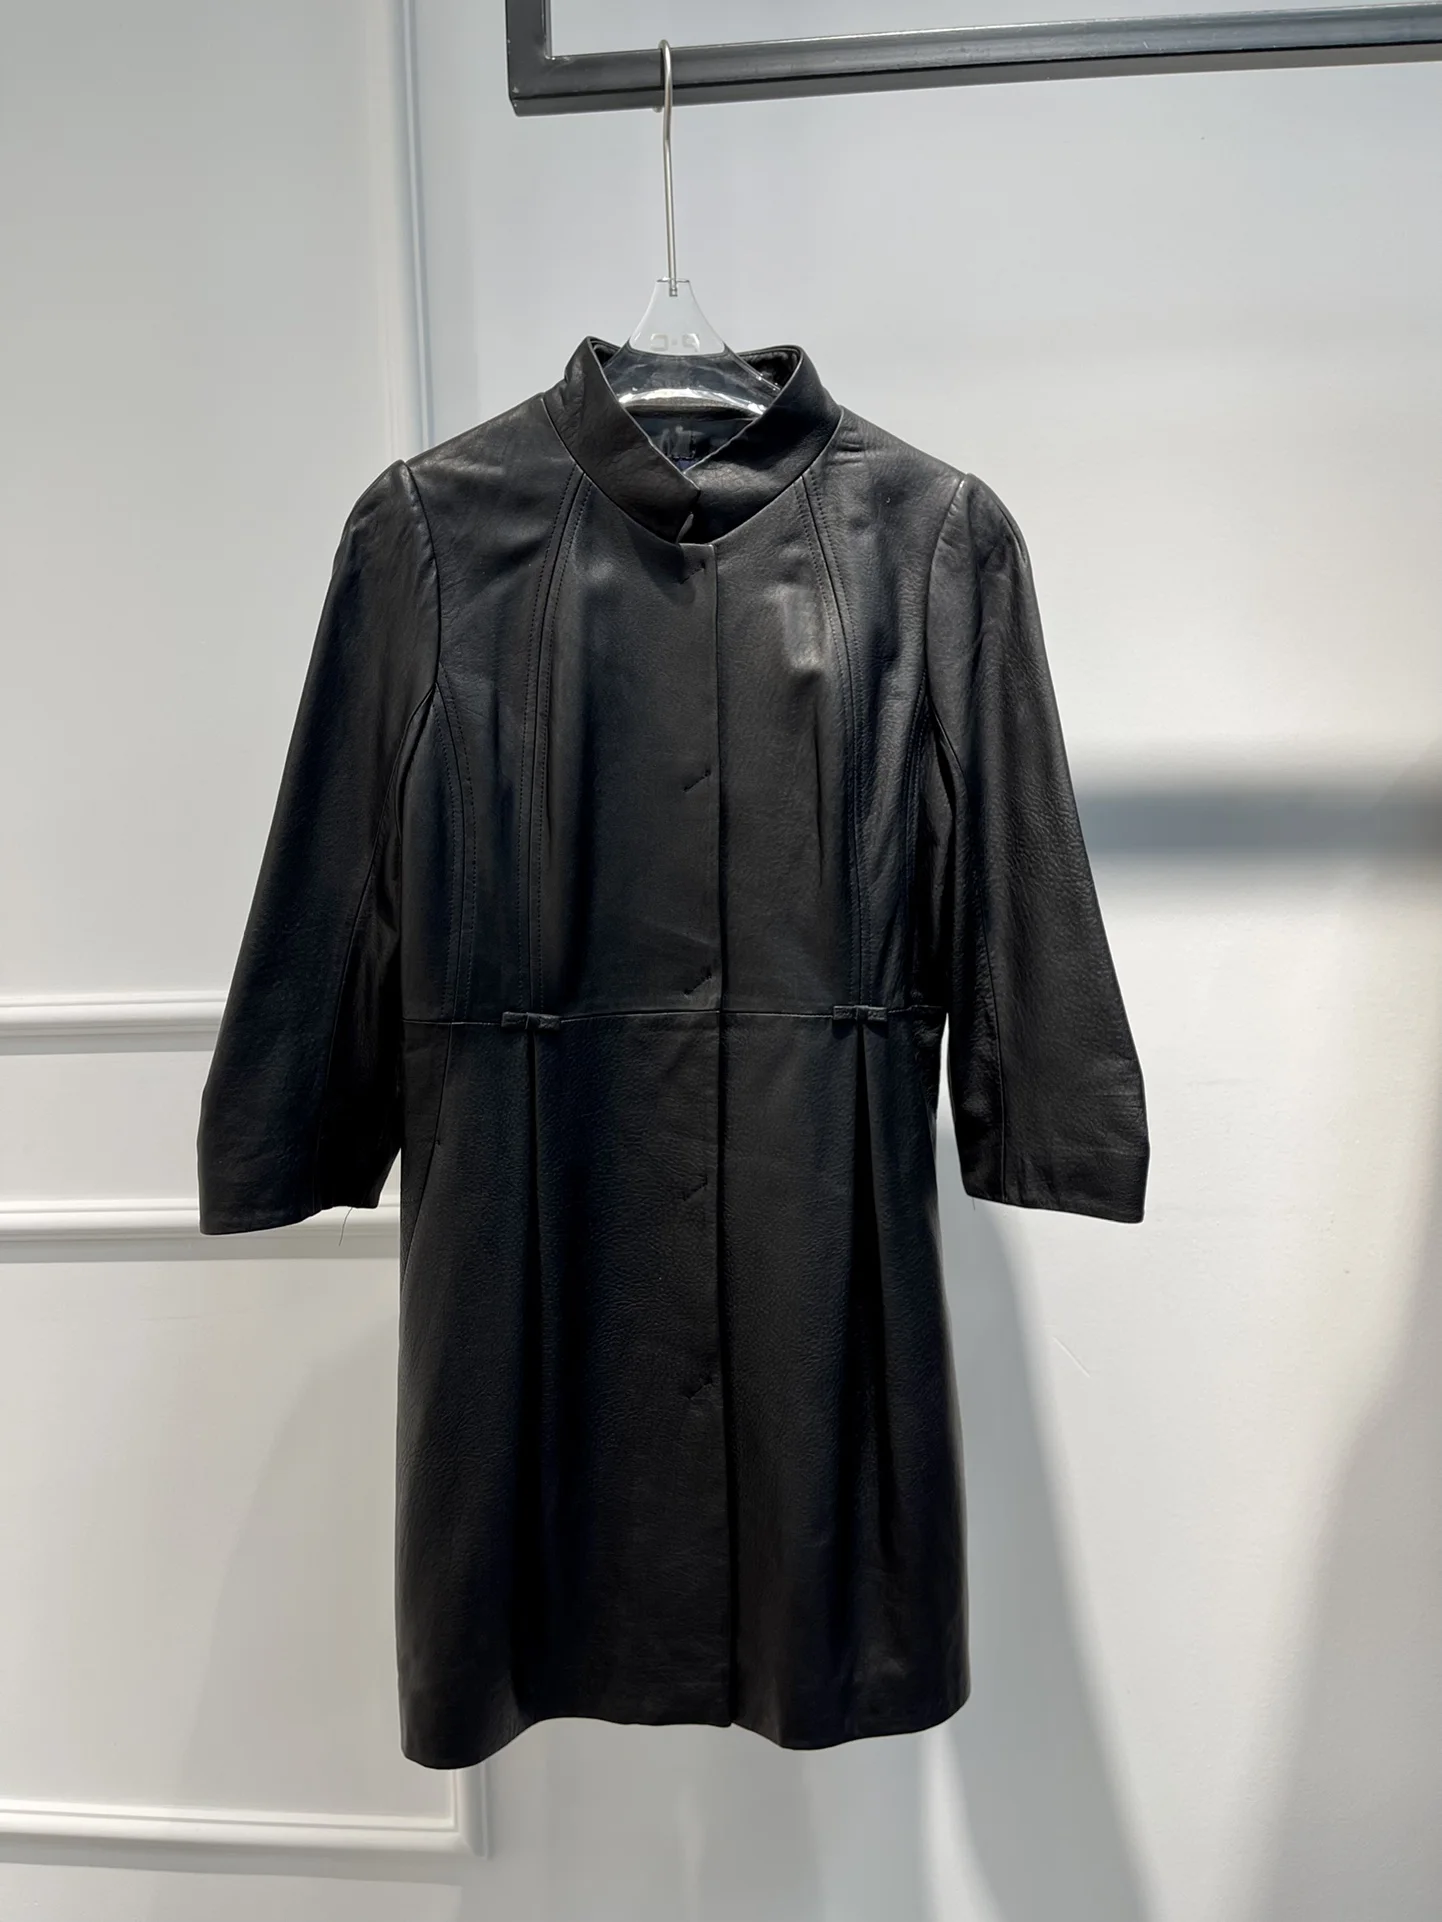 Enlarge 2022 Hot Sale Long Leather Jacket Top Quality Sheepskin Fashion Unisex Basics Coat Fast Delivery